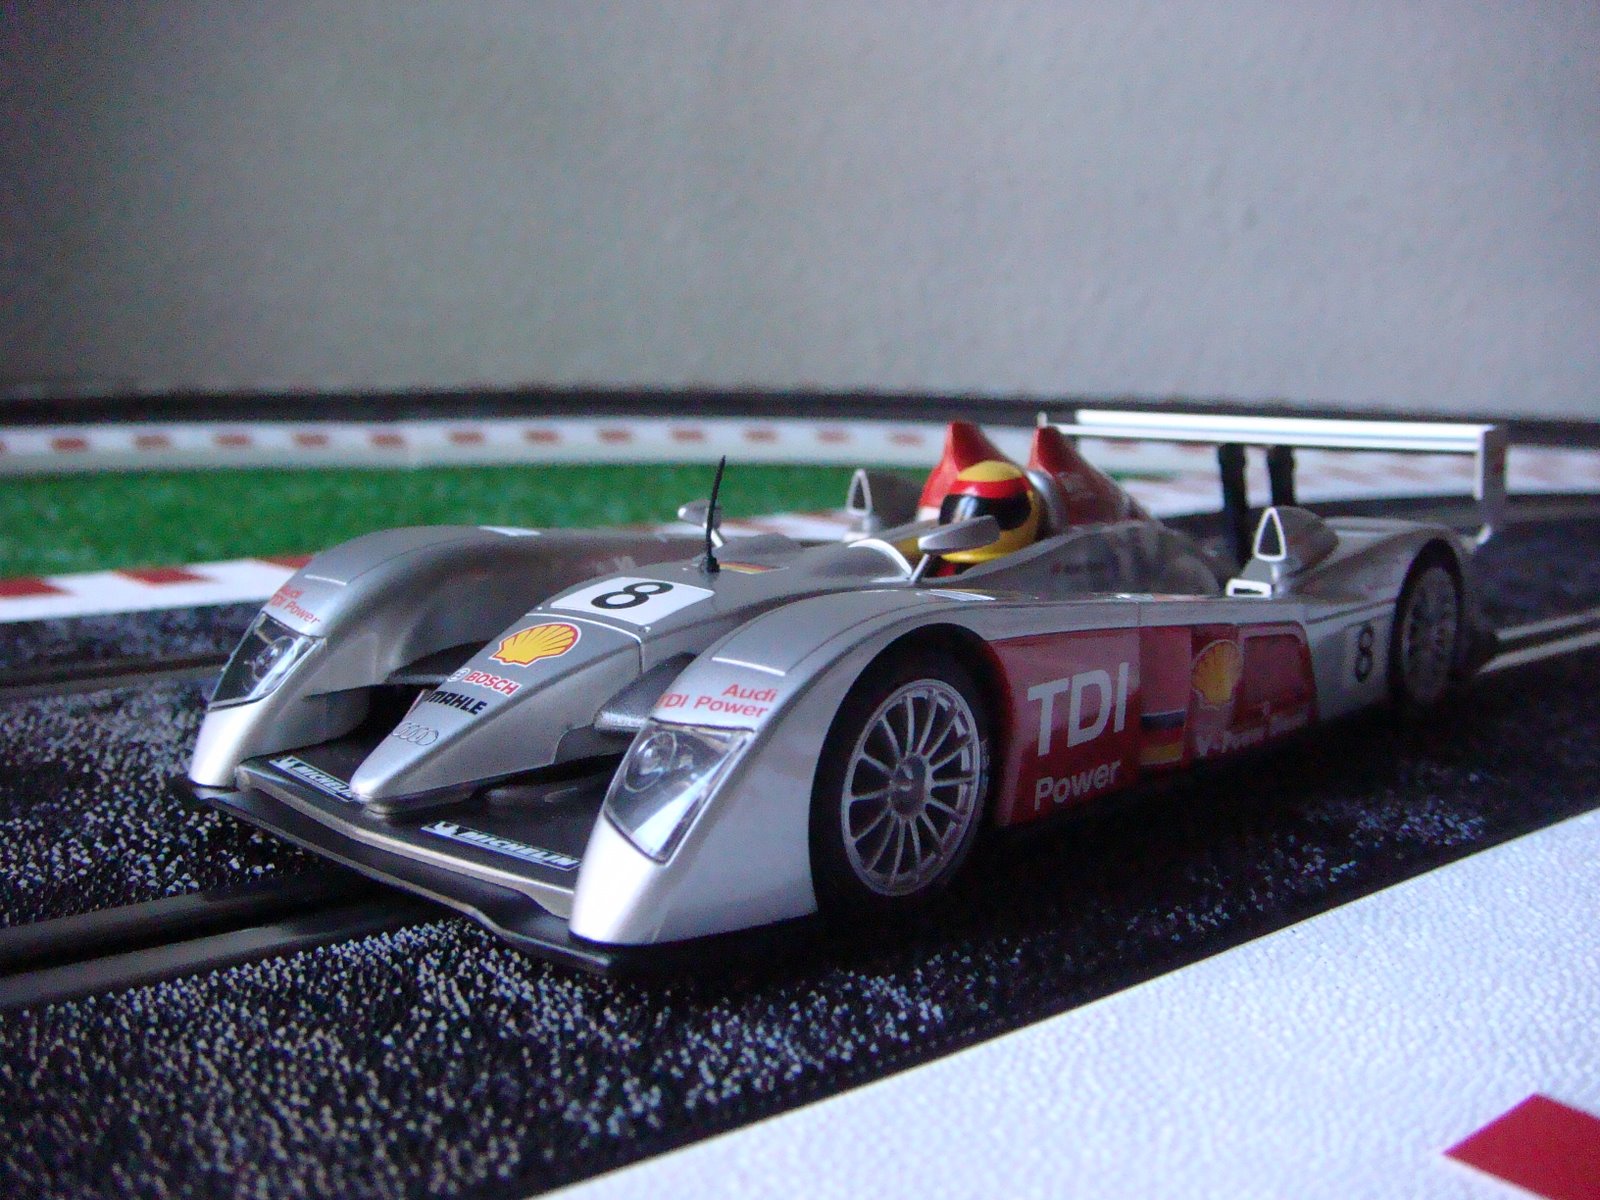 [Audi+R10+TDI+Le+Mans+2006+F+Biela+E+Pirro+M+Werner+Superslot+03+.jpg]